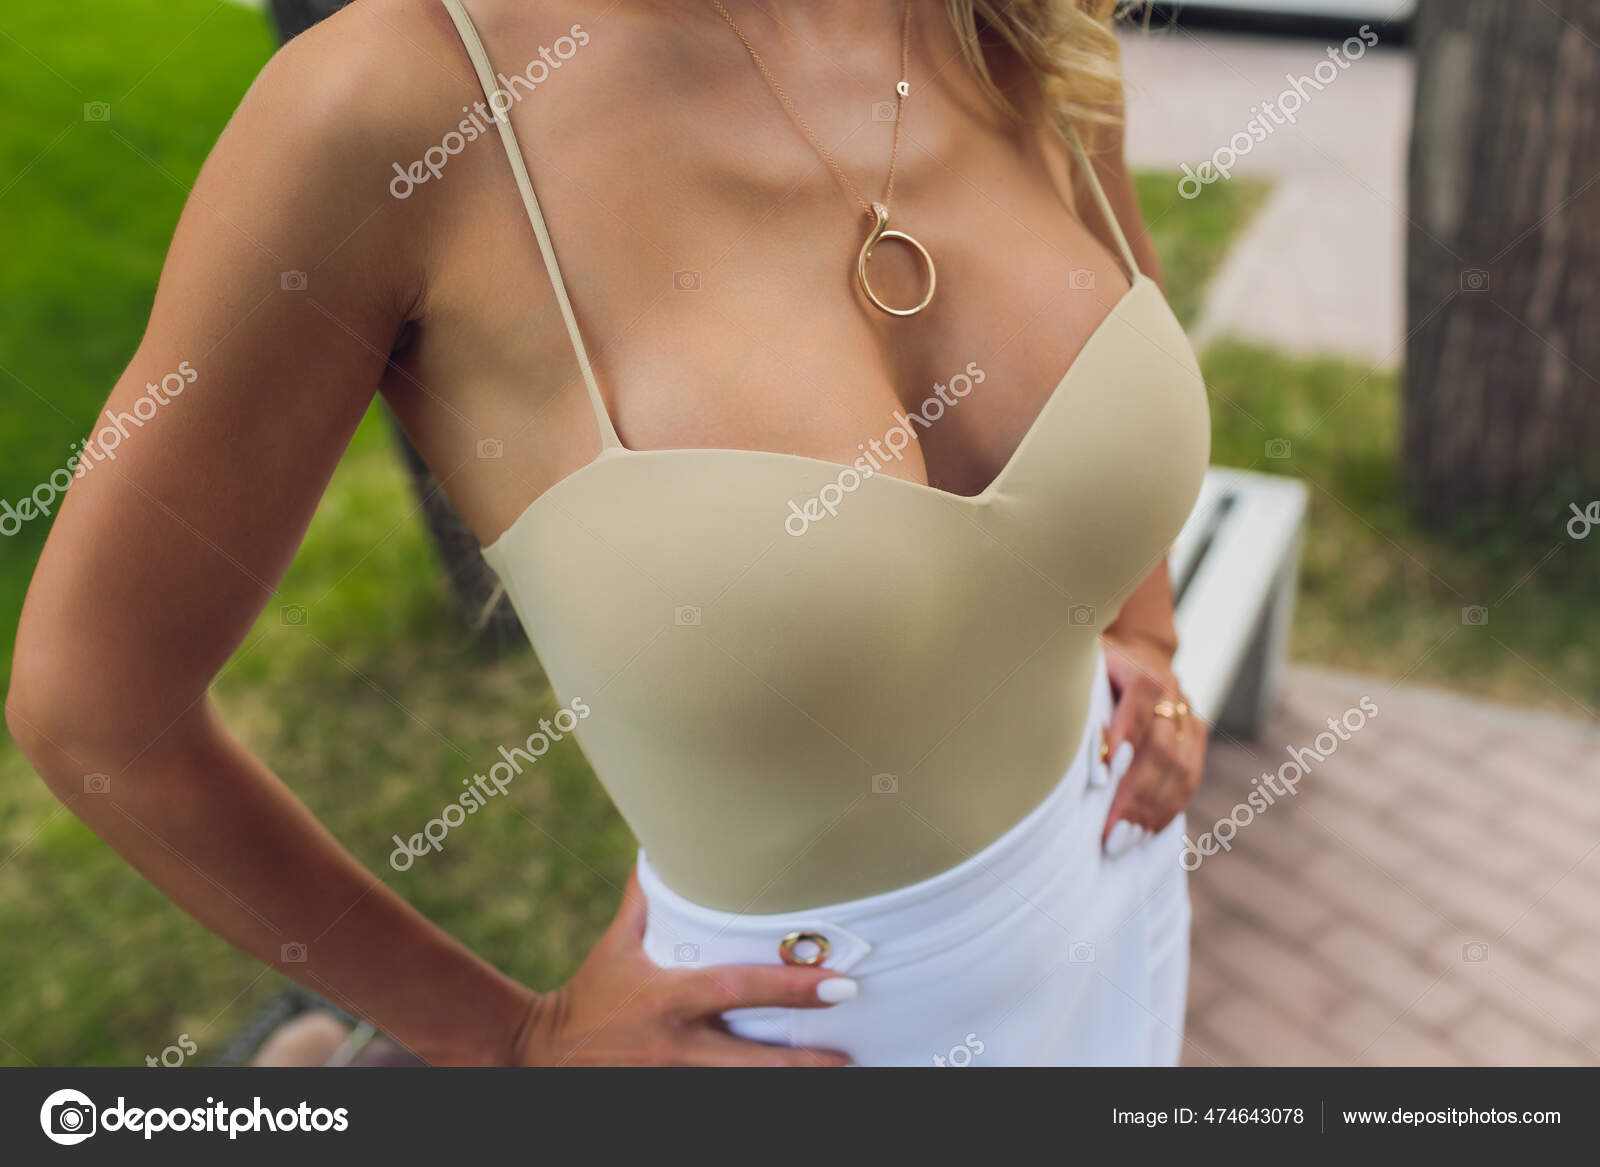 Decollete, weibliche Brust. Ausschnitt weißes Kleid und Pelzkragen. -  Stockfotografie: lizenzfreie Fotos © vershinin.photo 474643078